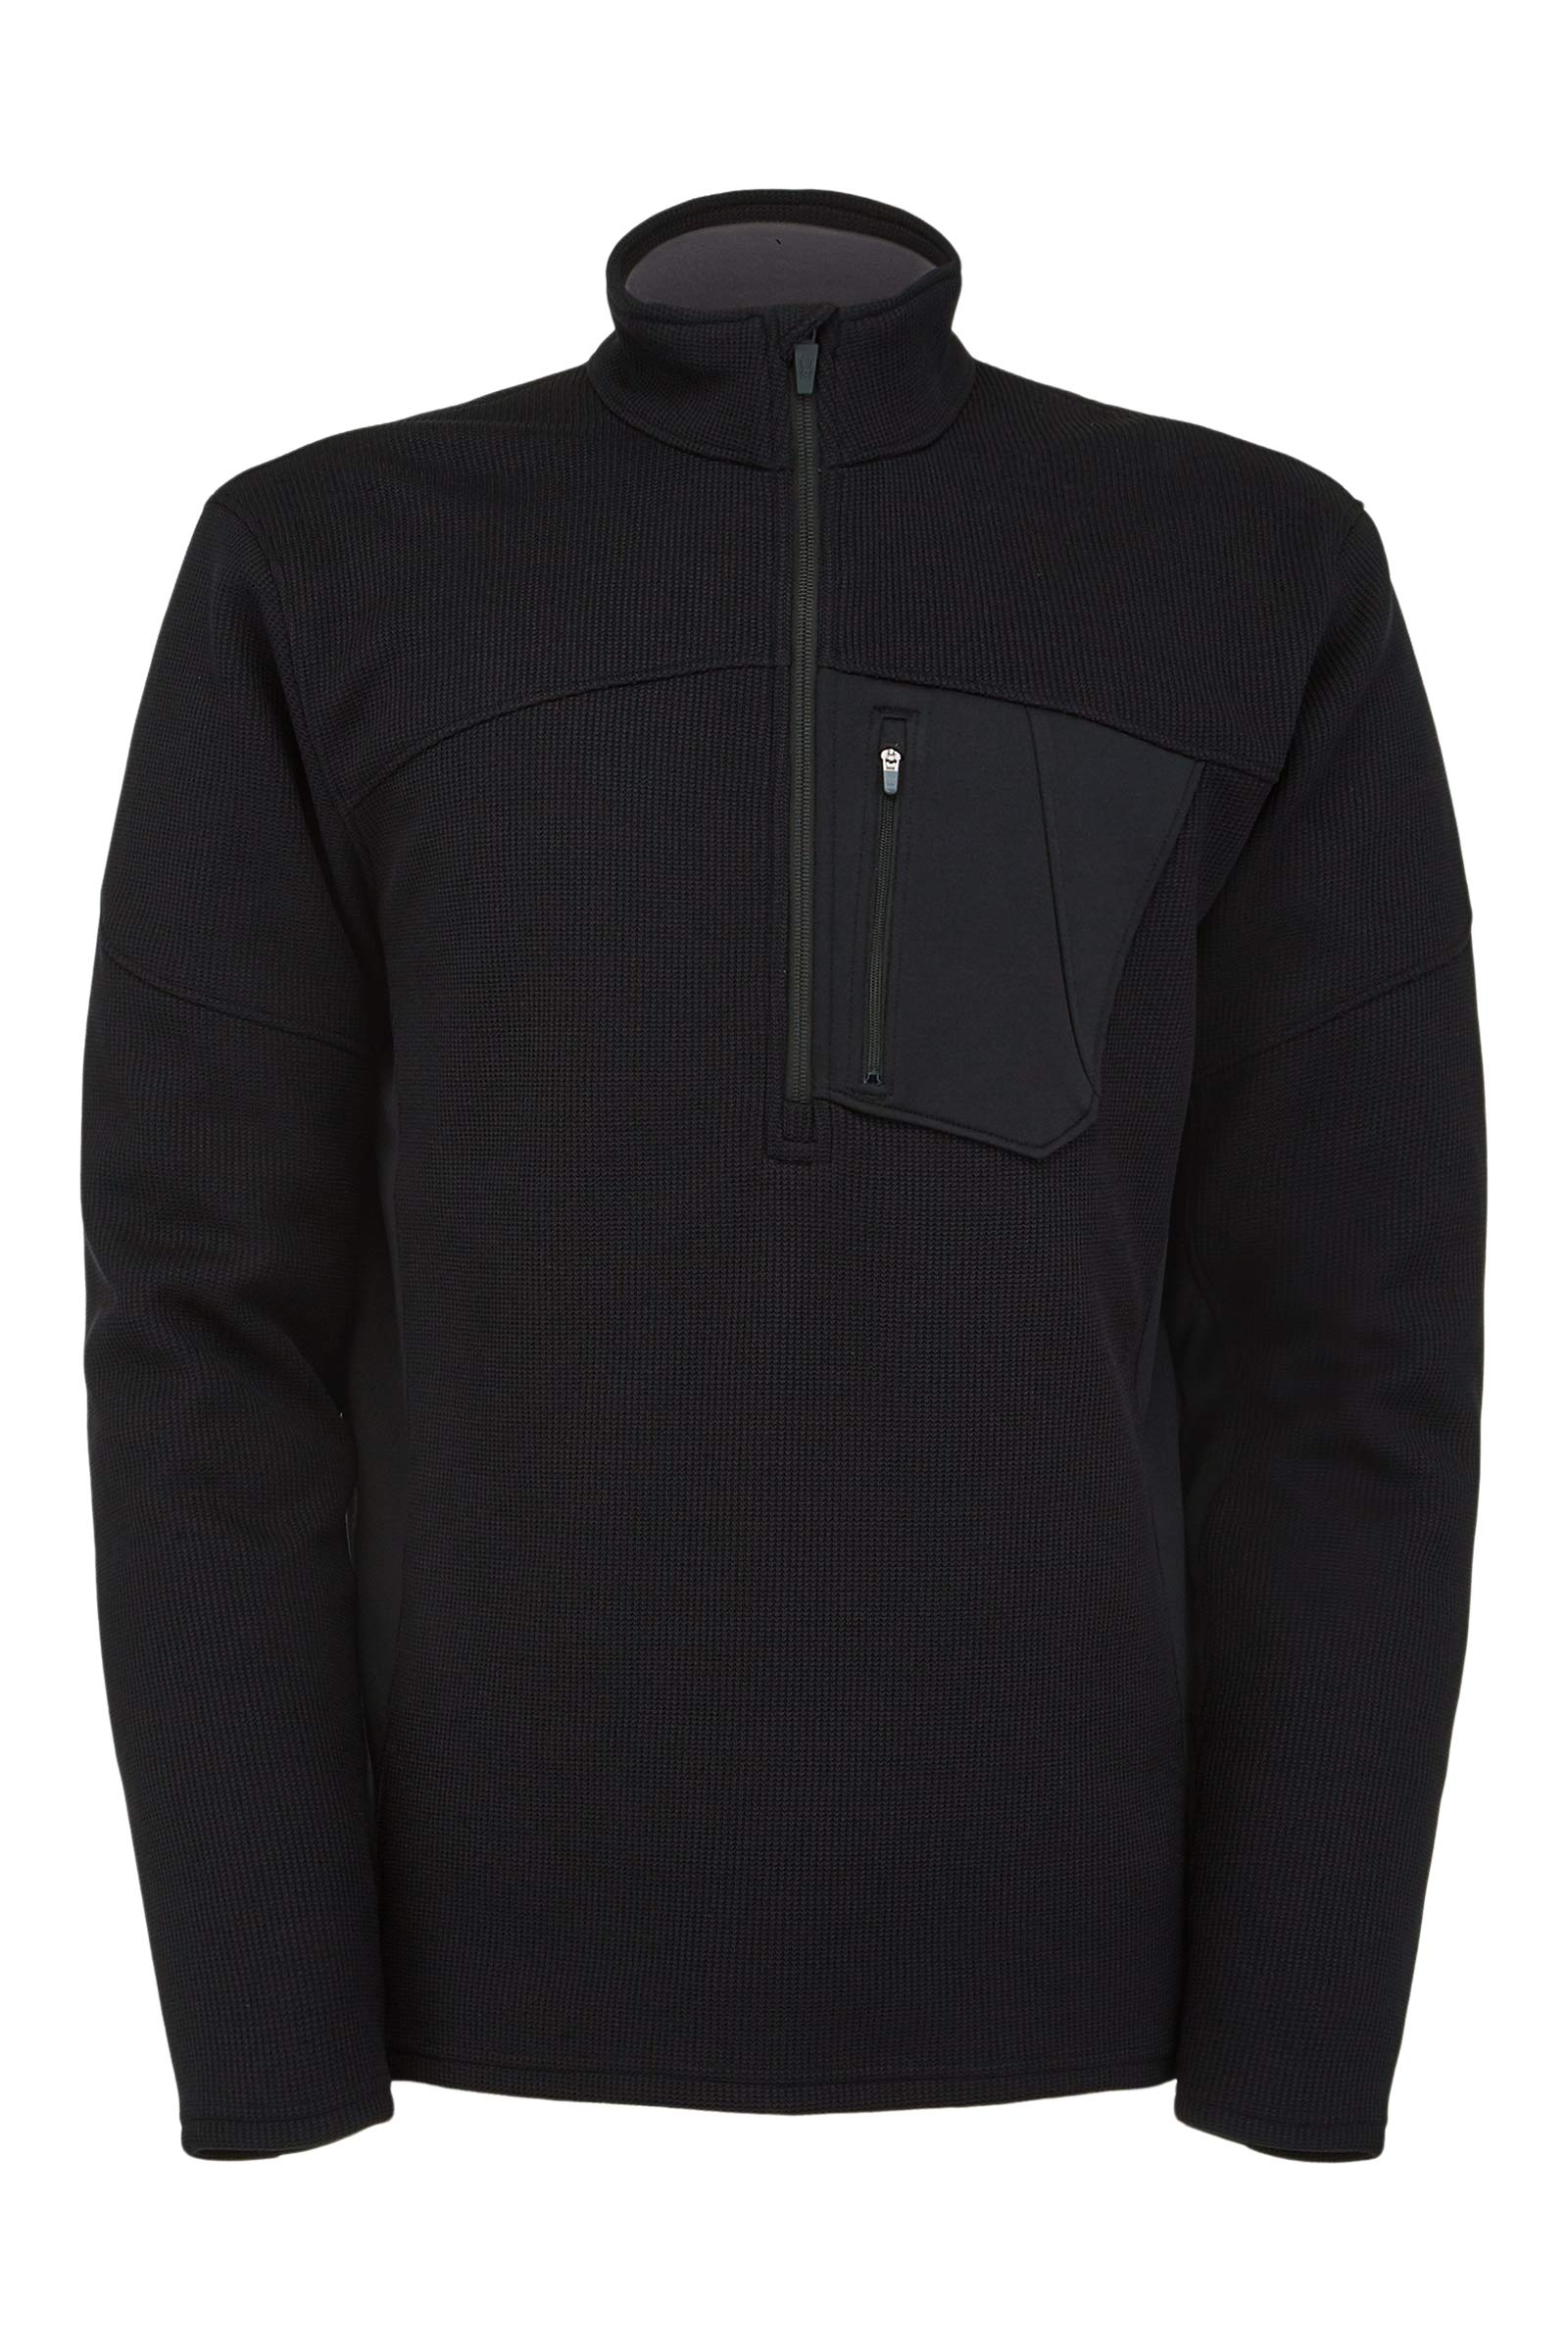 Spyder Men's Bandit Half Zip Fleece Jacket, Black, XL